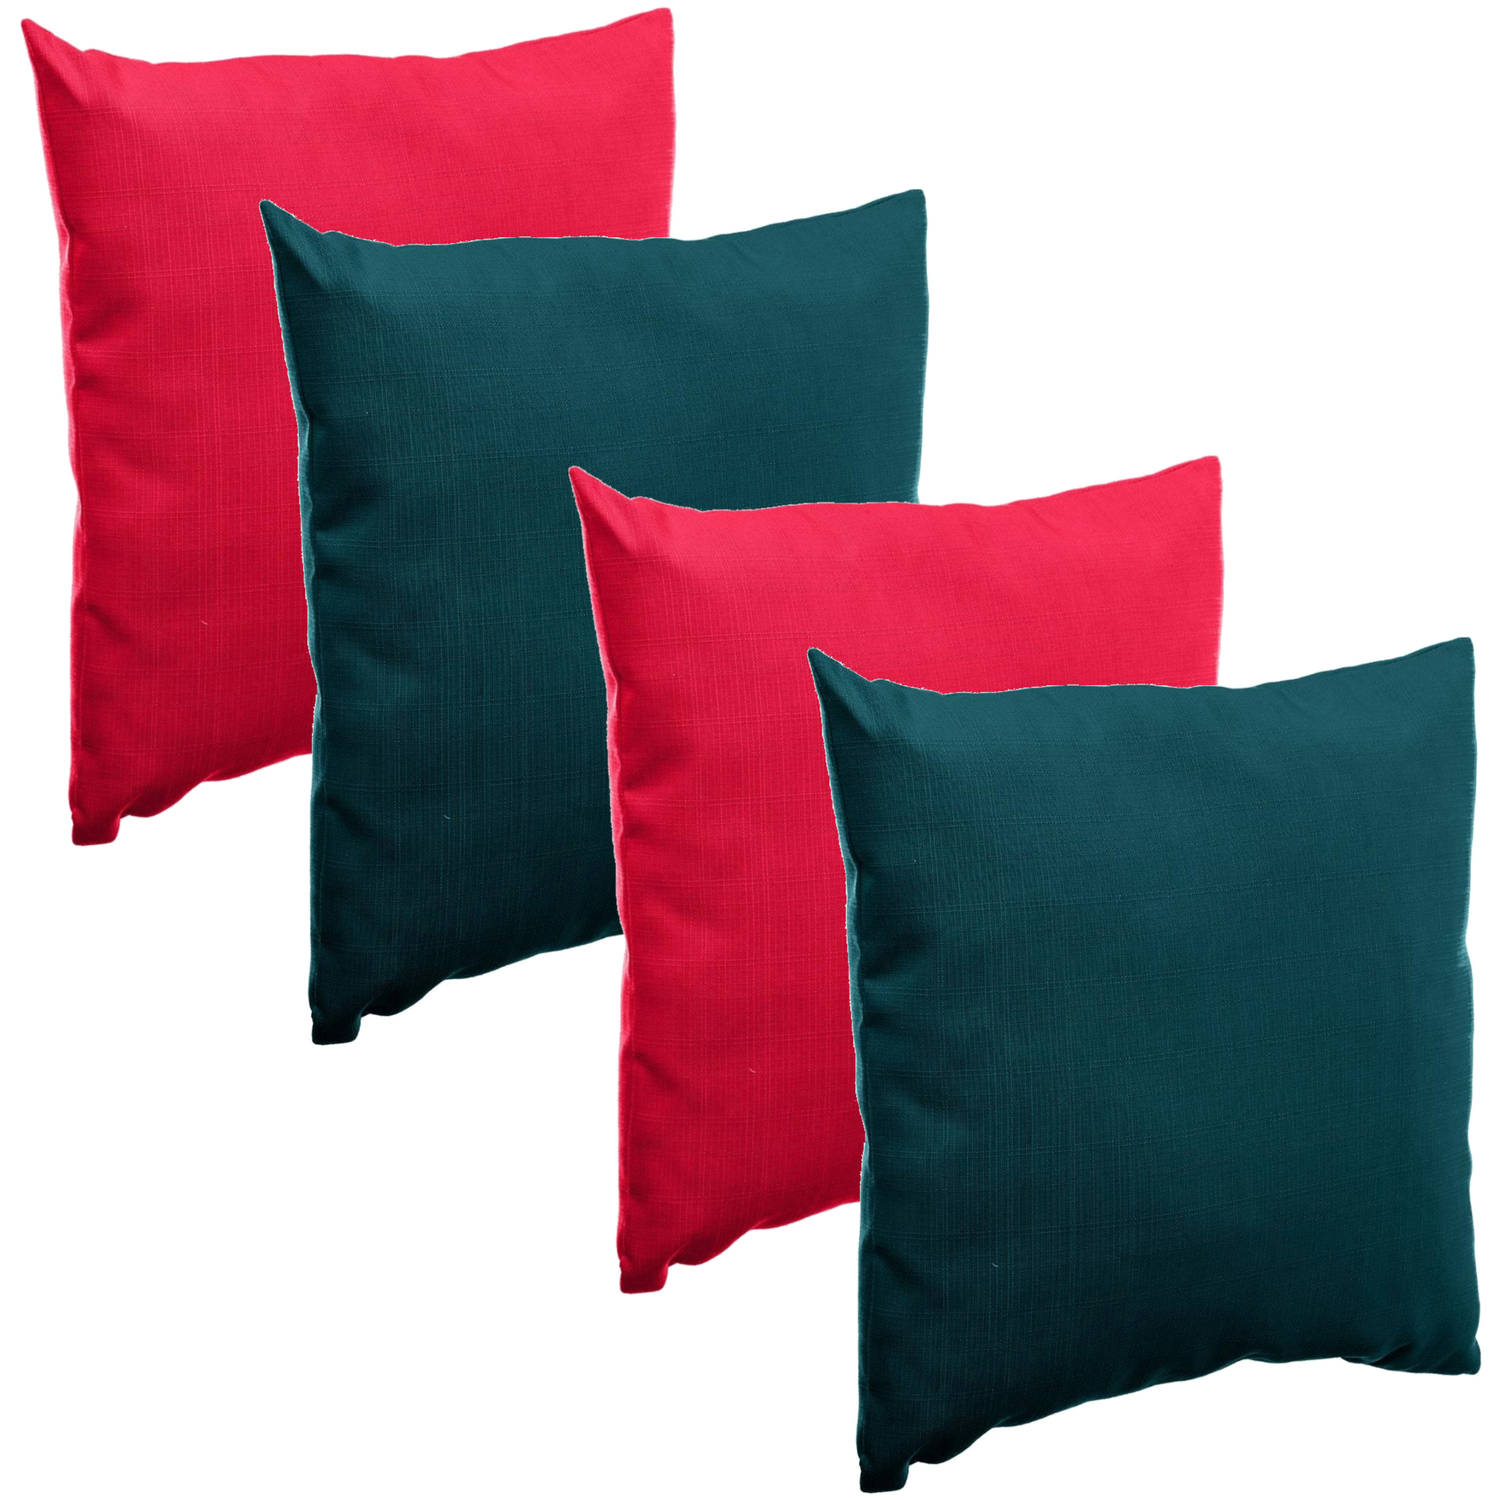 Bank-sier-tuin kussens voor binnen-buiten set 4x stuks rood-emerald groen 40 x 40 cm Sierkussens